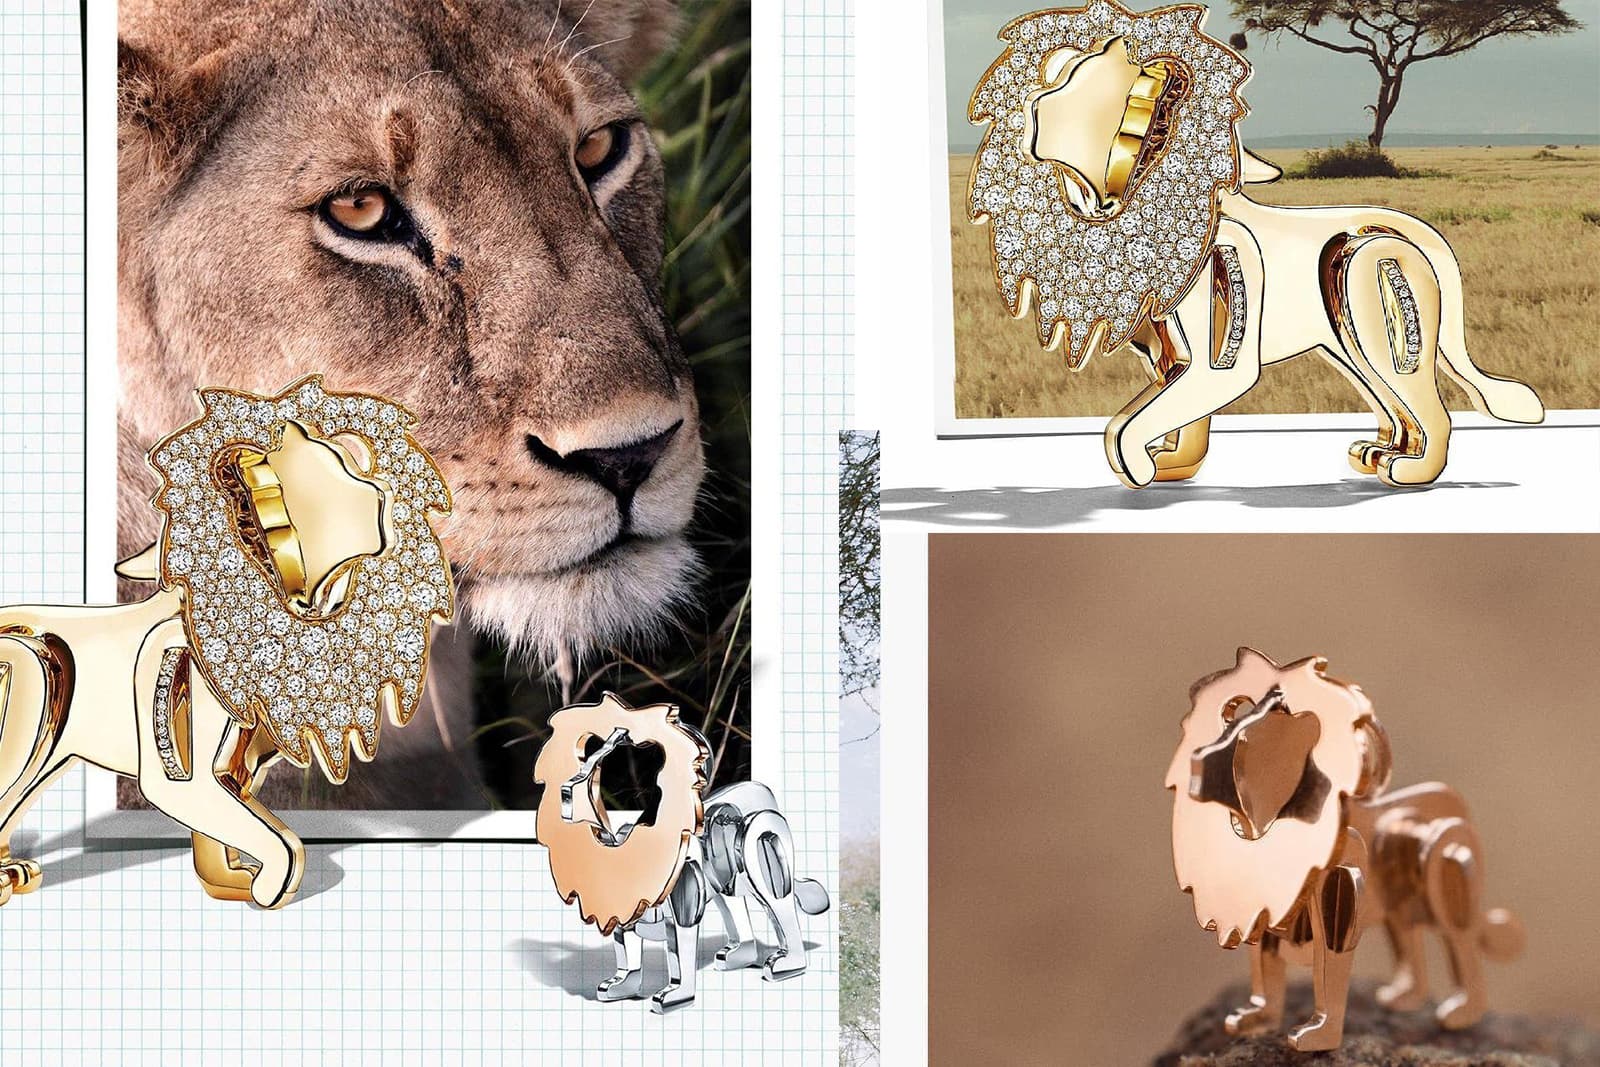 В рамках обязательства по защите планеты в 2017 году Tiffany & Co. выпустил коллекцию Tiffany Save the Wild с украшениями в виде львов, носорогов и слонов